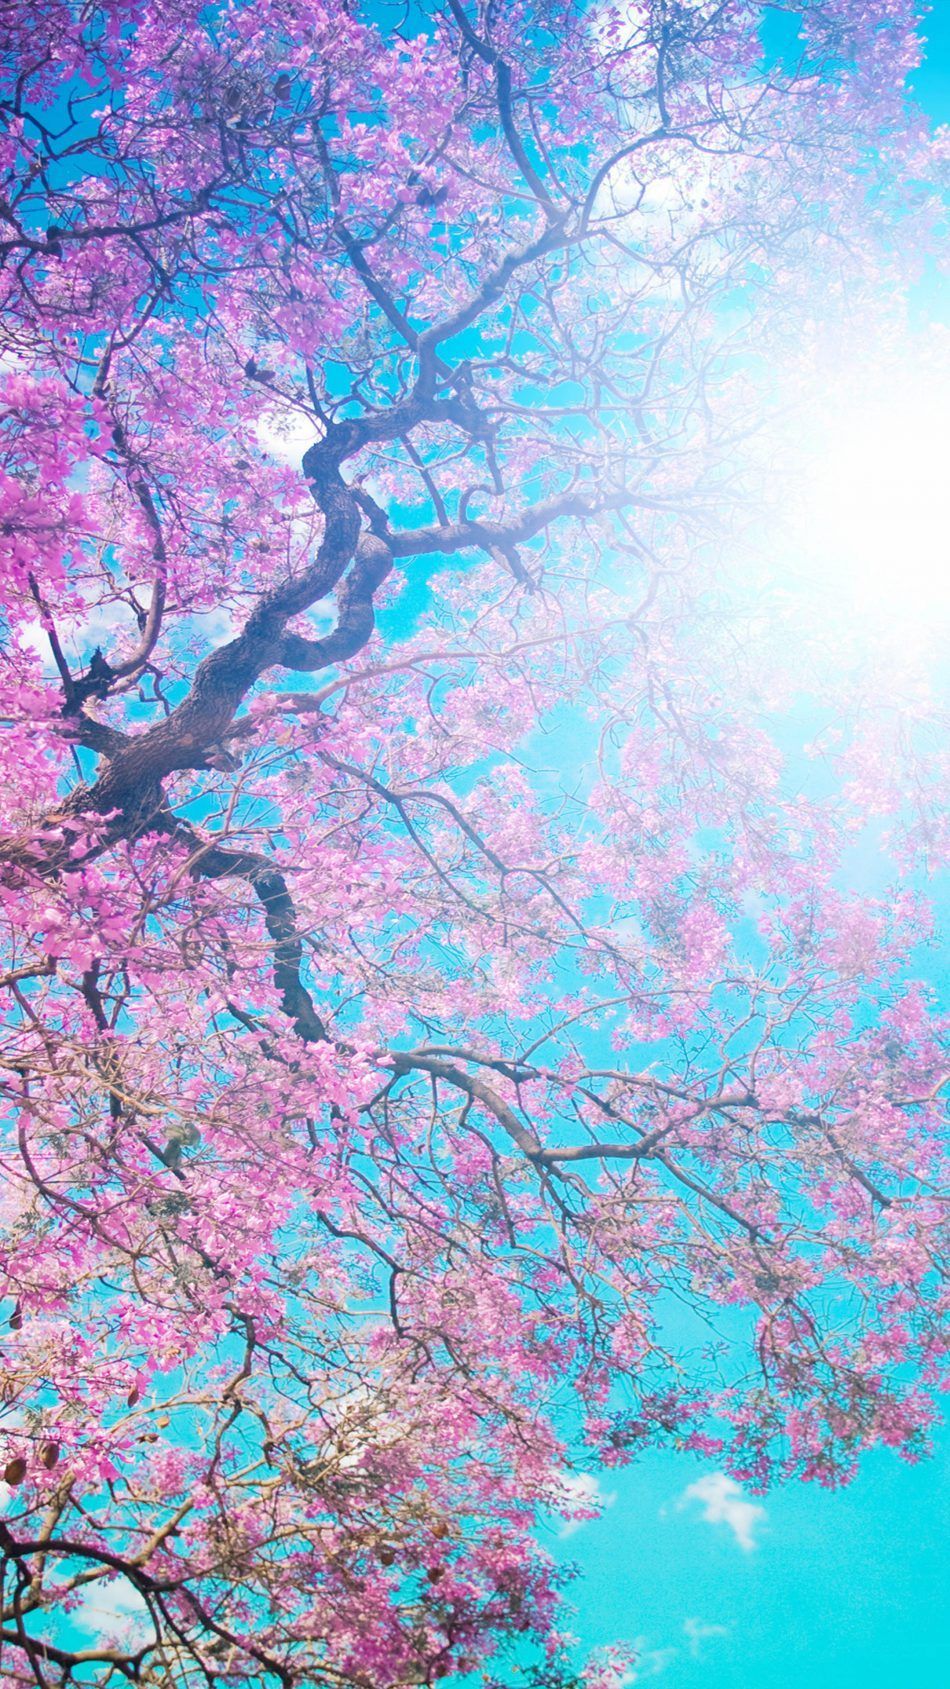 Tree Sunny Spring Day. Spring desktop wallpaper, Spring wallpaper